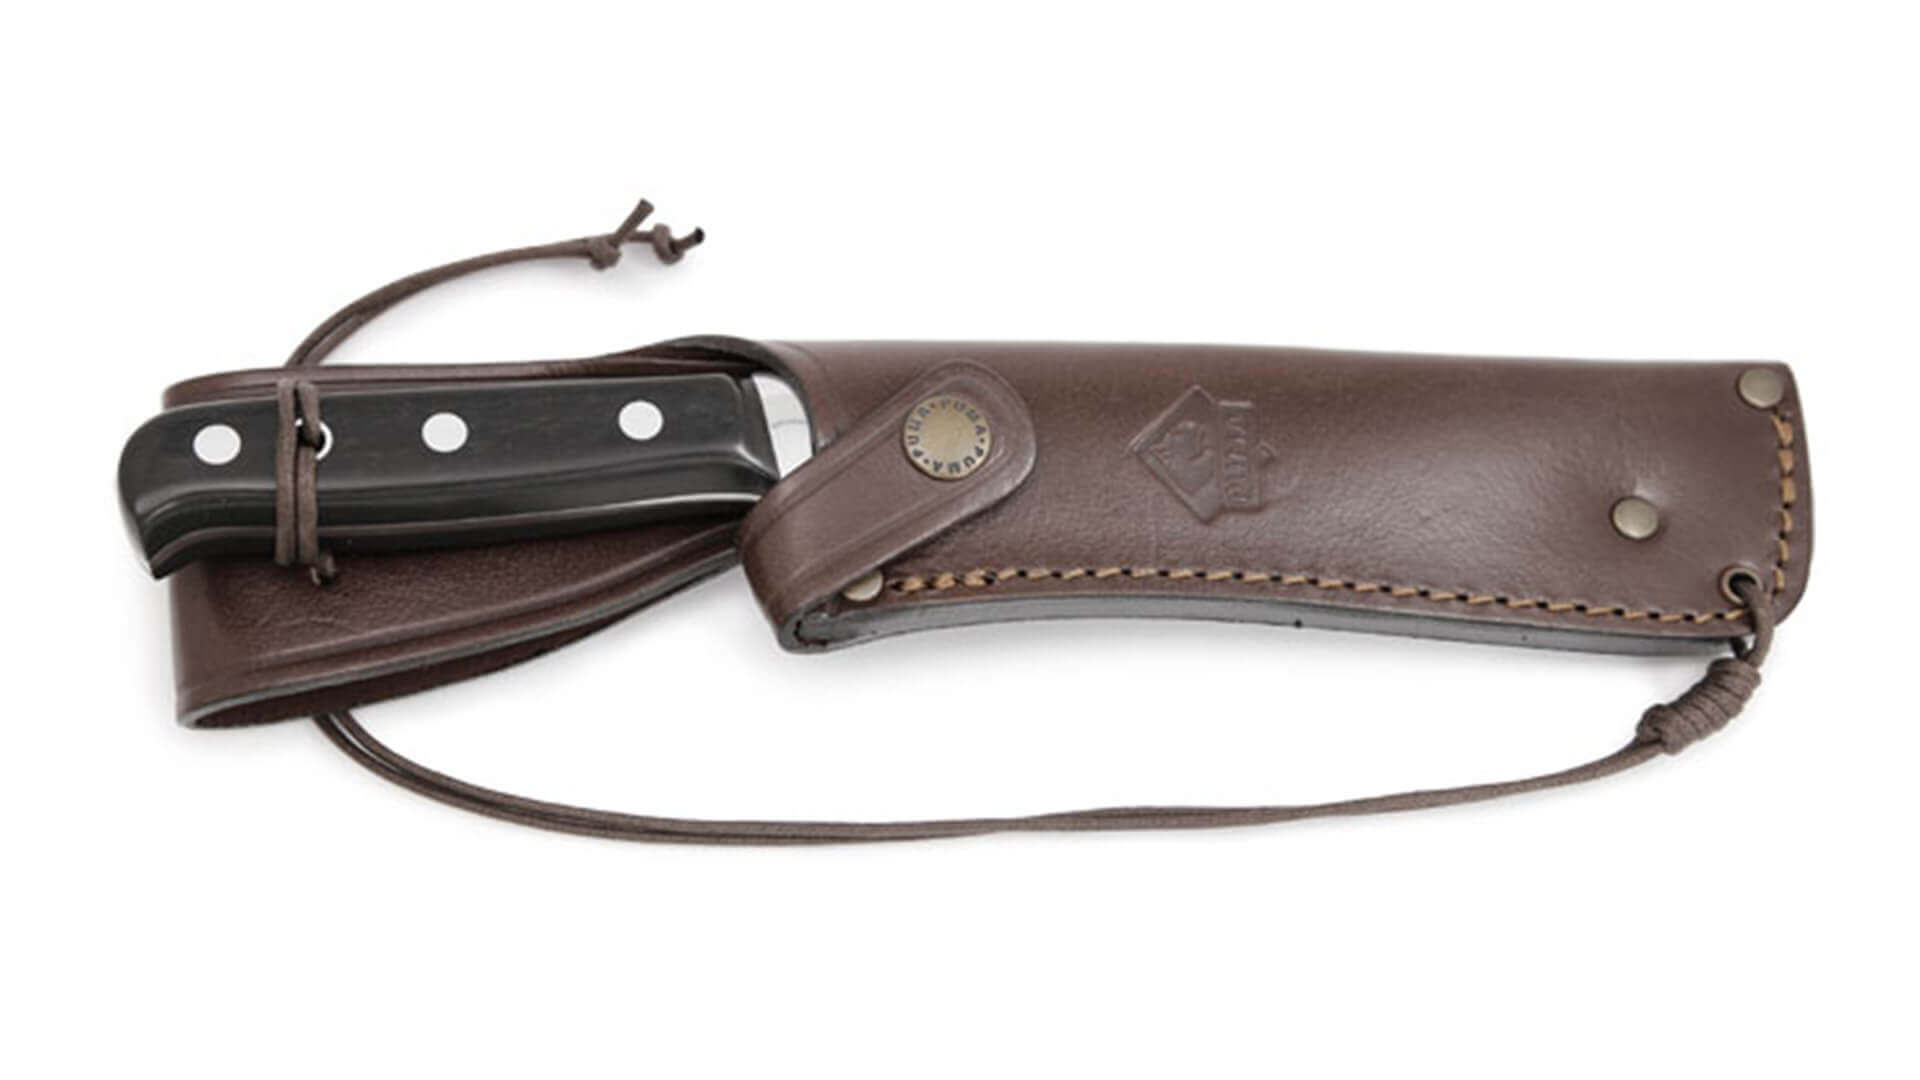 puma-sedona-knife-in-leather-sheath